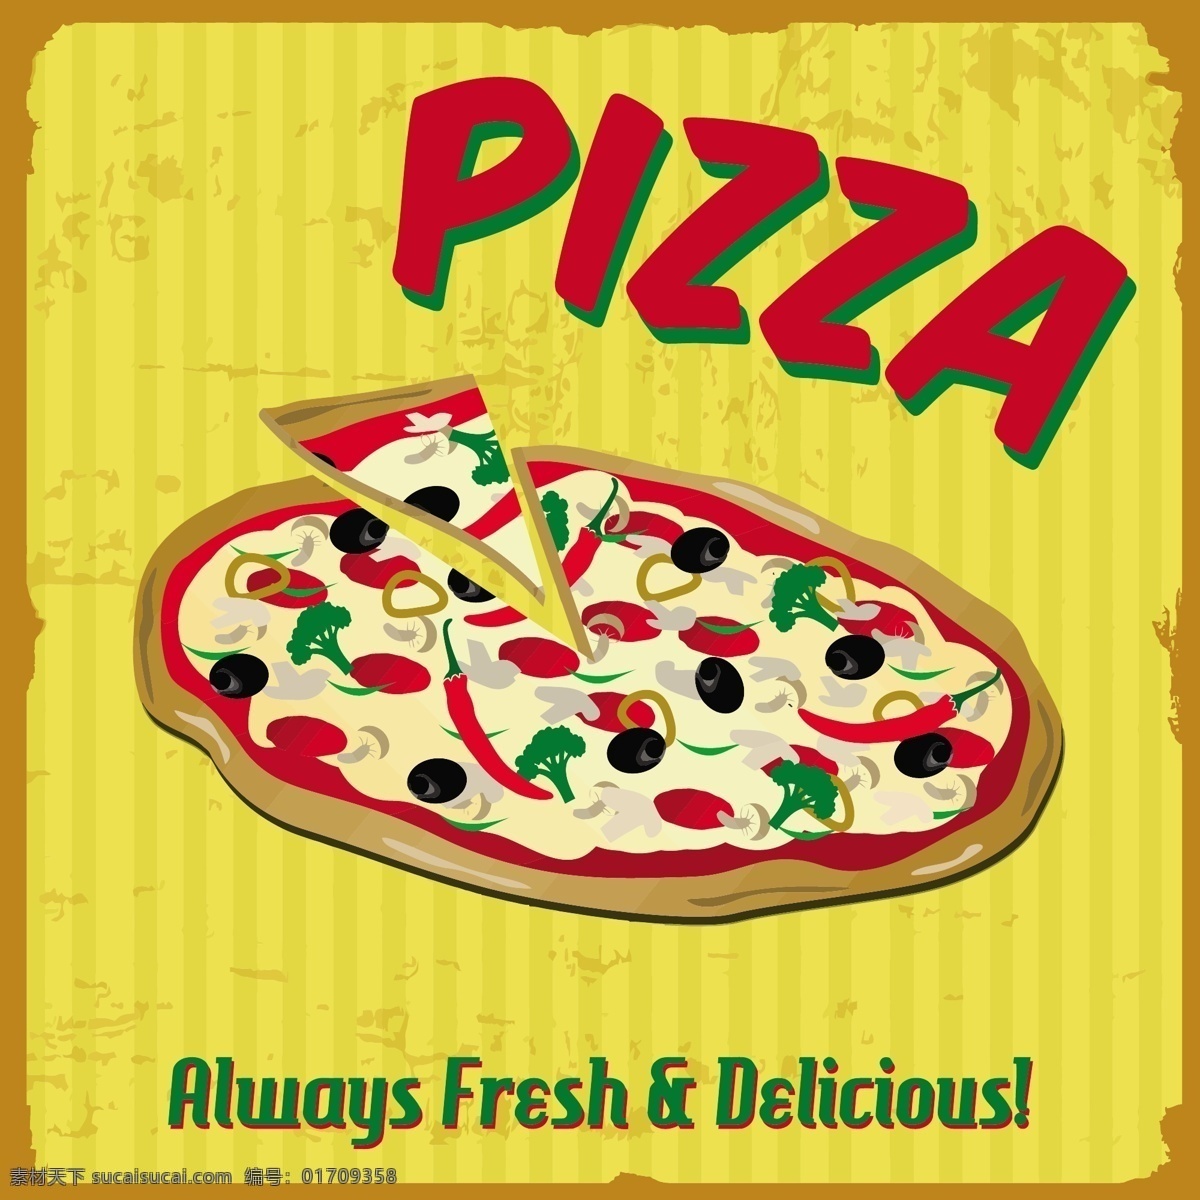 复古披萨海报 手绘 复古 披萨 早餐 快餐 西式 美食 餐饮 矢量 披萨素材 食品蔬菜水果 生活百科 餐饮美食